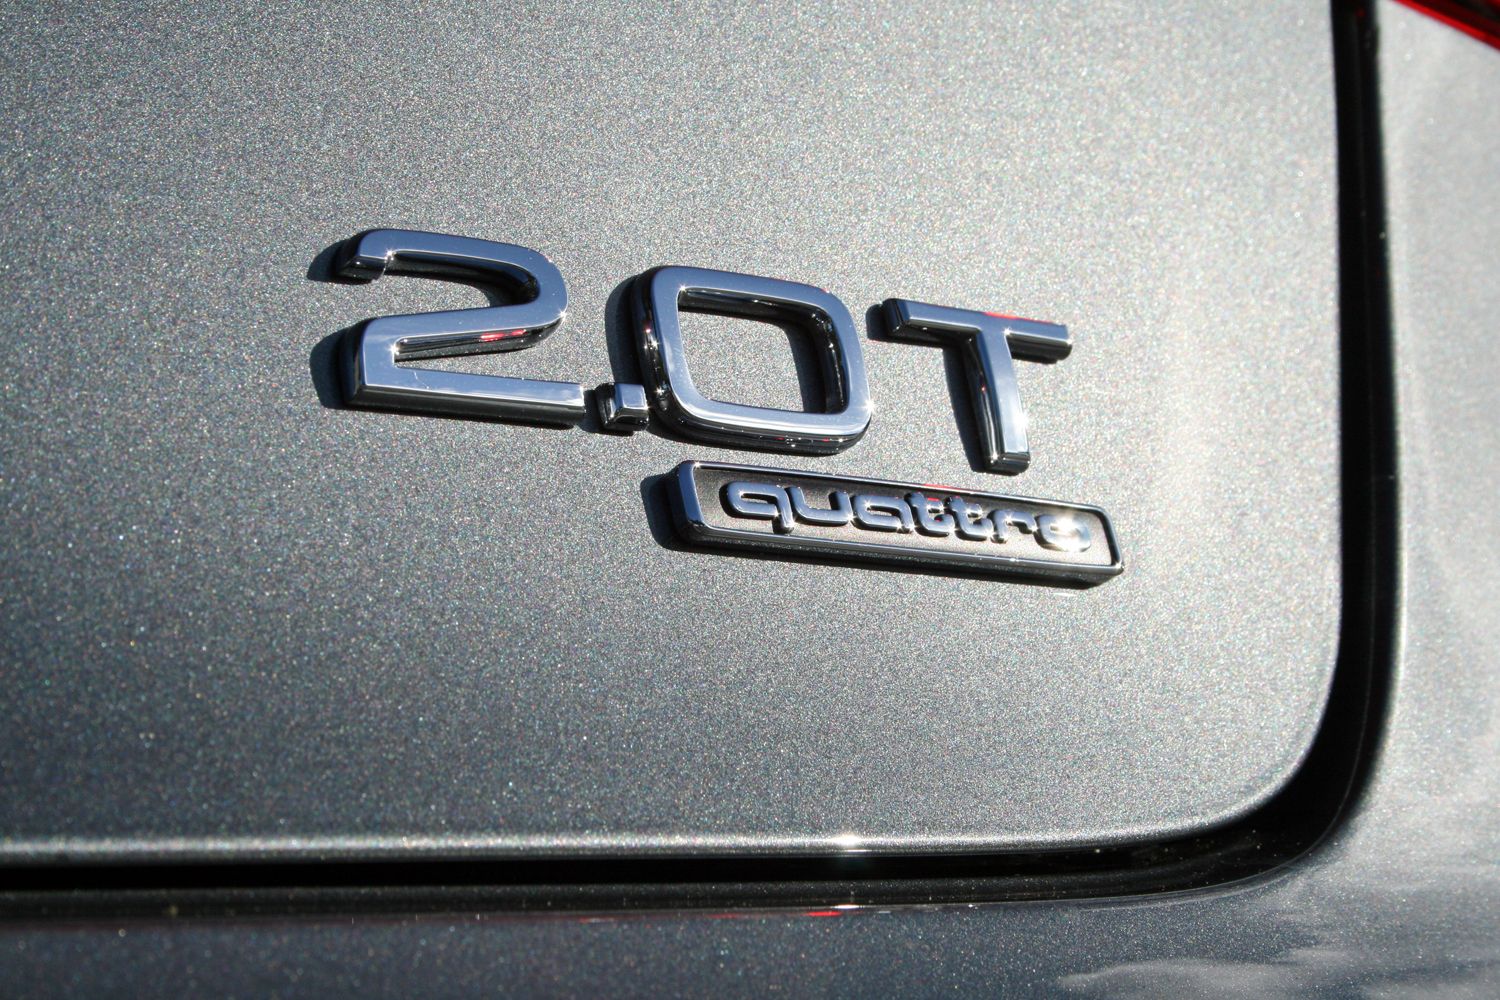 2015 Audi A3 2.0T Quattro - Driven